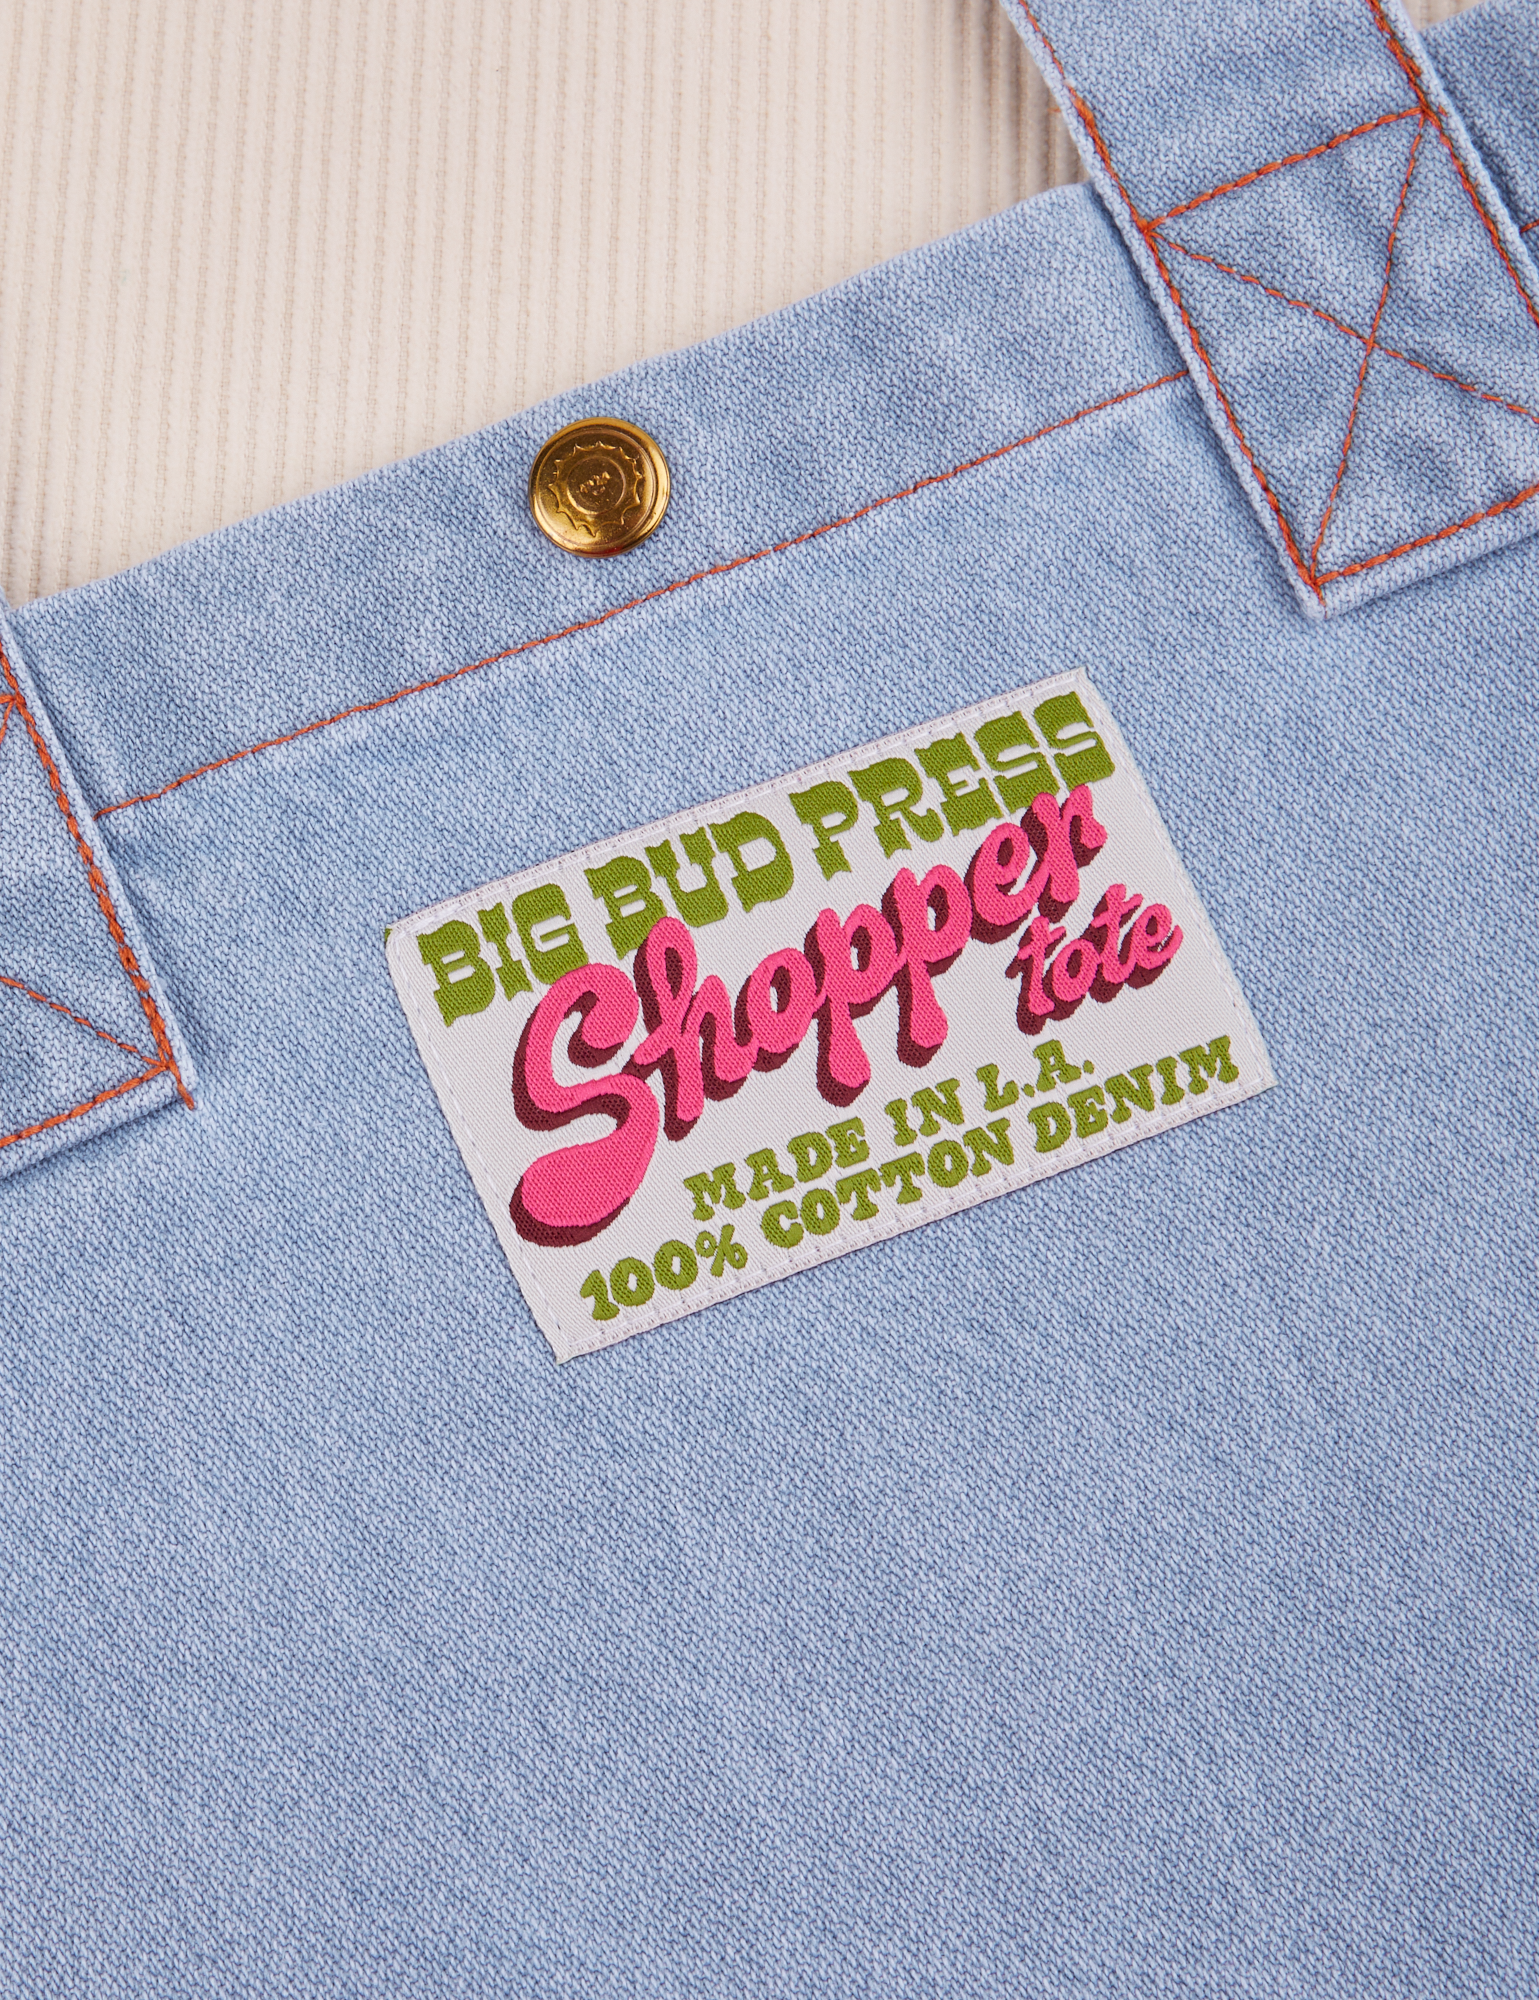 Denim Shopper Tote Bag label close up that reads: Big Bud Press Shopper Tote. Made in LA. 100% Cotton Denim.